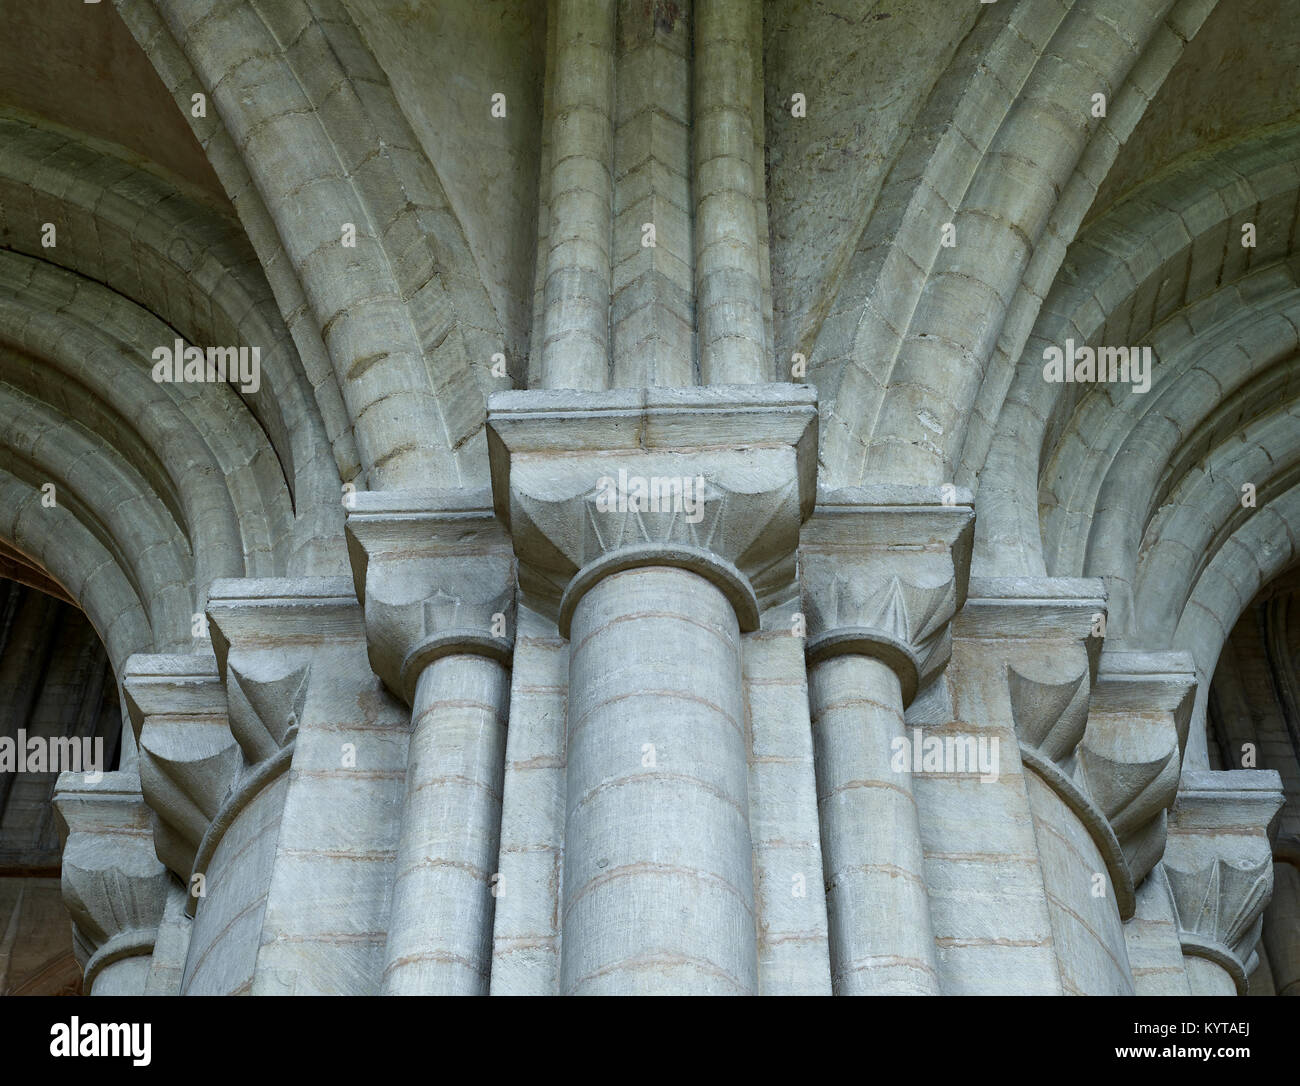 Die Kathedrale von Peterborough. Cluster von würfelkapitellen Unterstützung Federung Rippen um kirchenschiff Pier. spät Norman, 12. Jahrhundert. Stockfoto